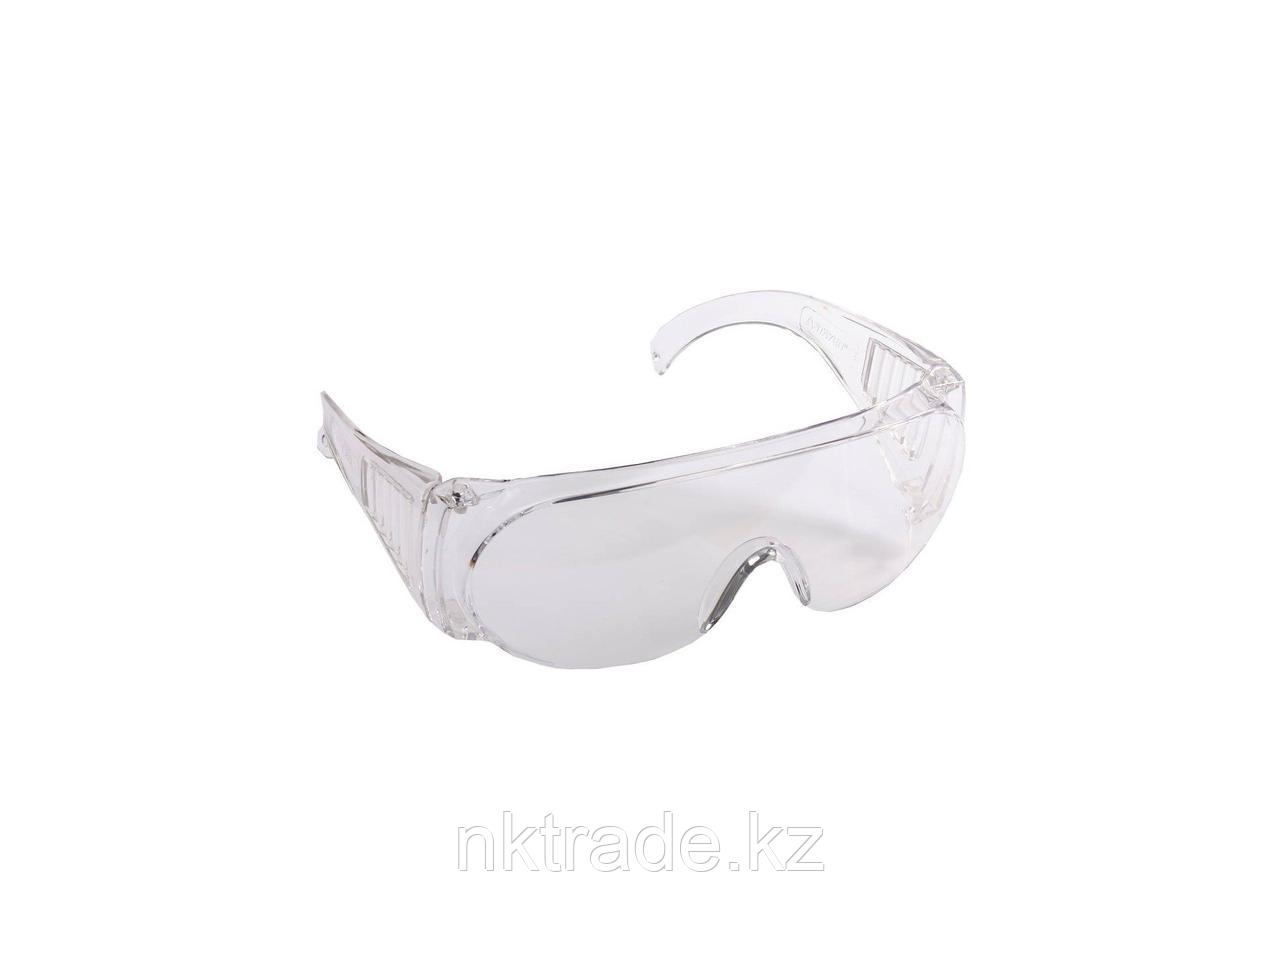 Очки STAYER "STANDARD" защитные, поликарбонатная монолинза с боковой вентиляцией, прозрачные 11041